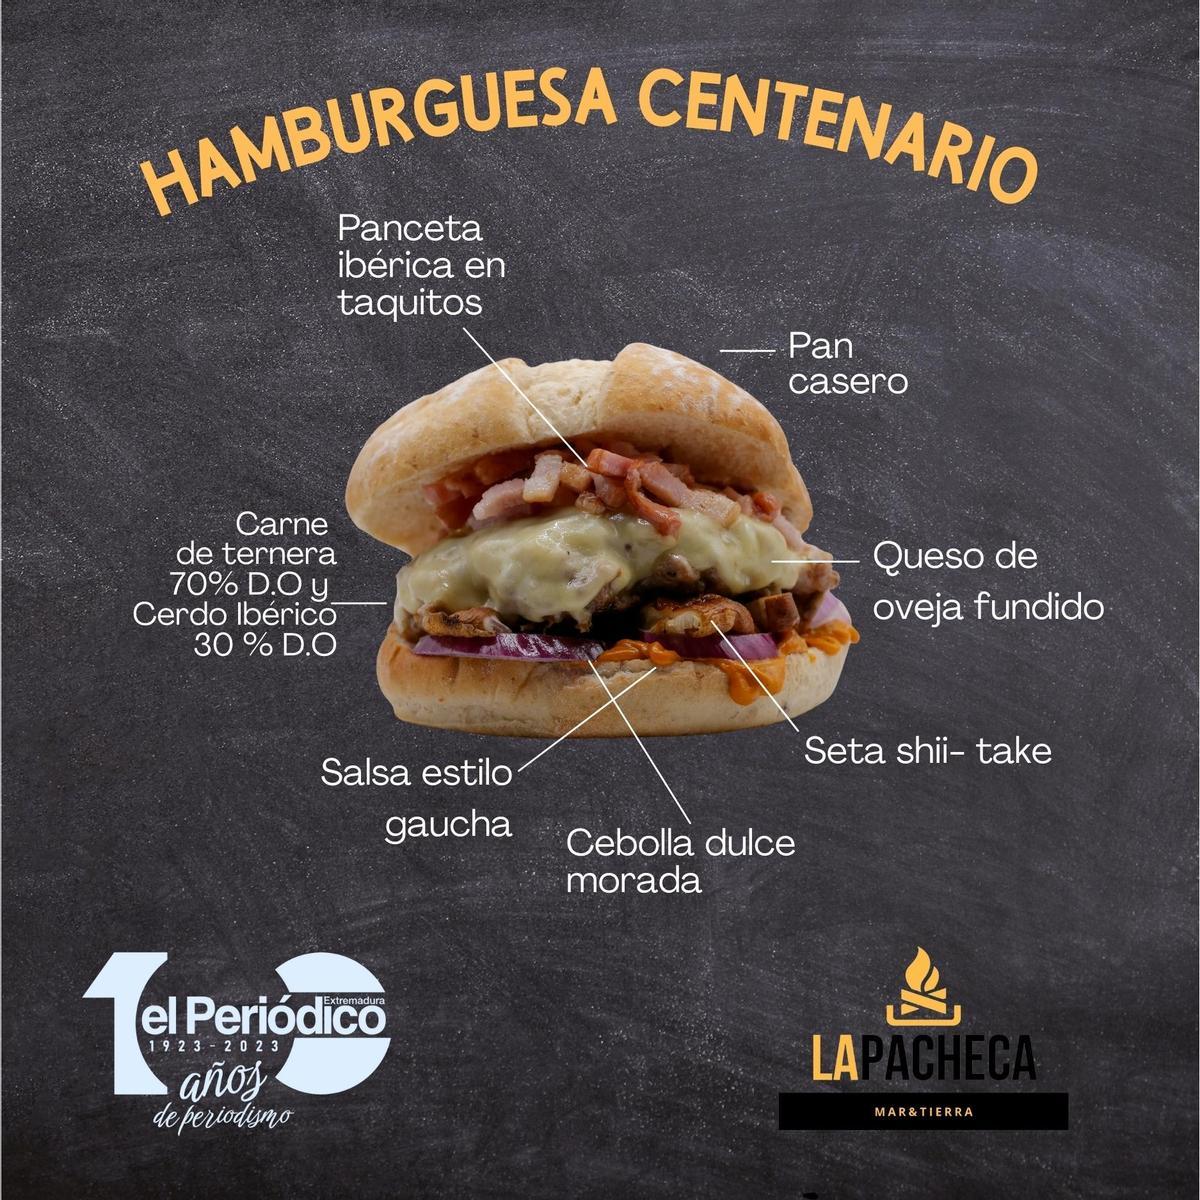 Así es la hamburguesa 'Centenario'.